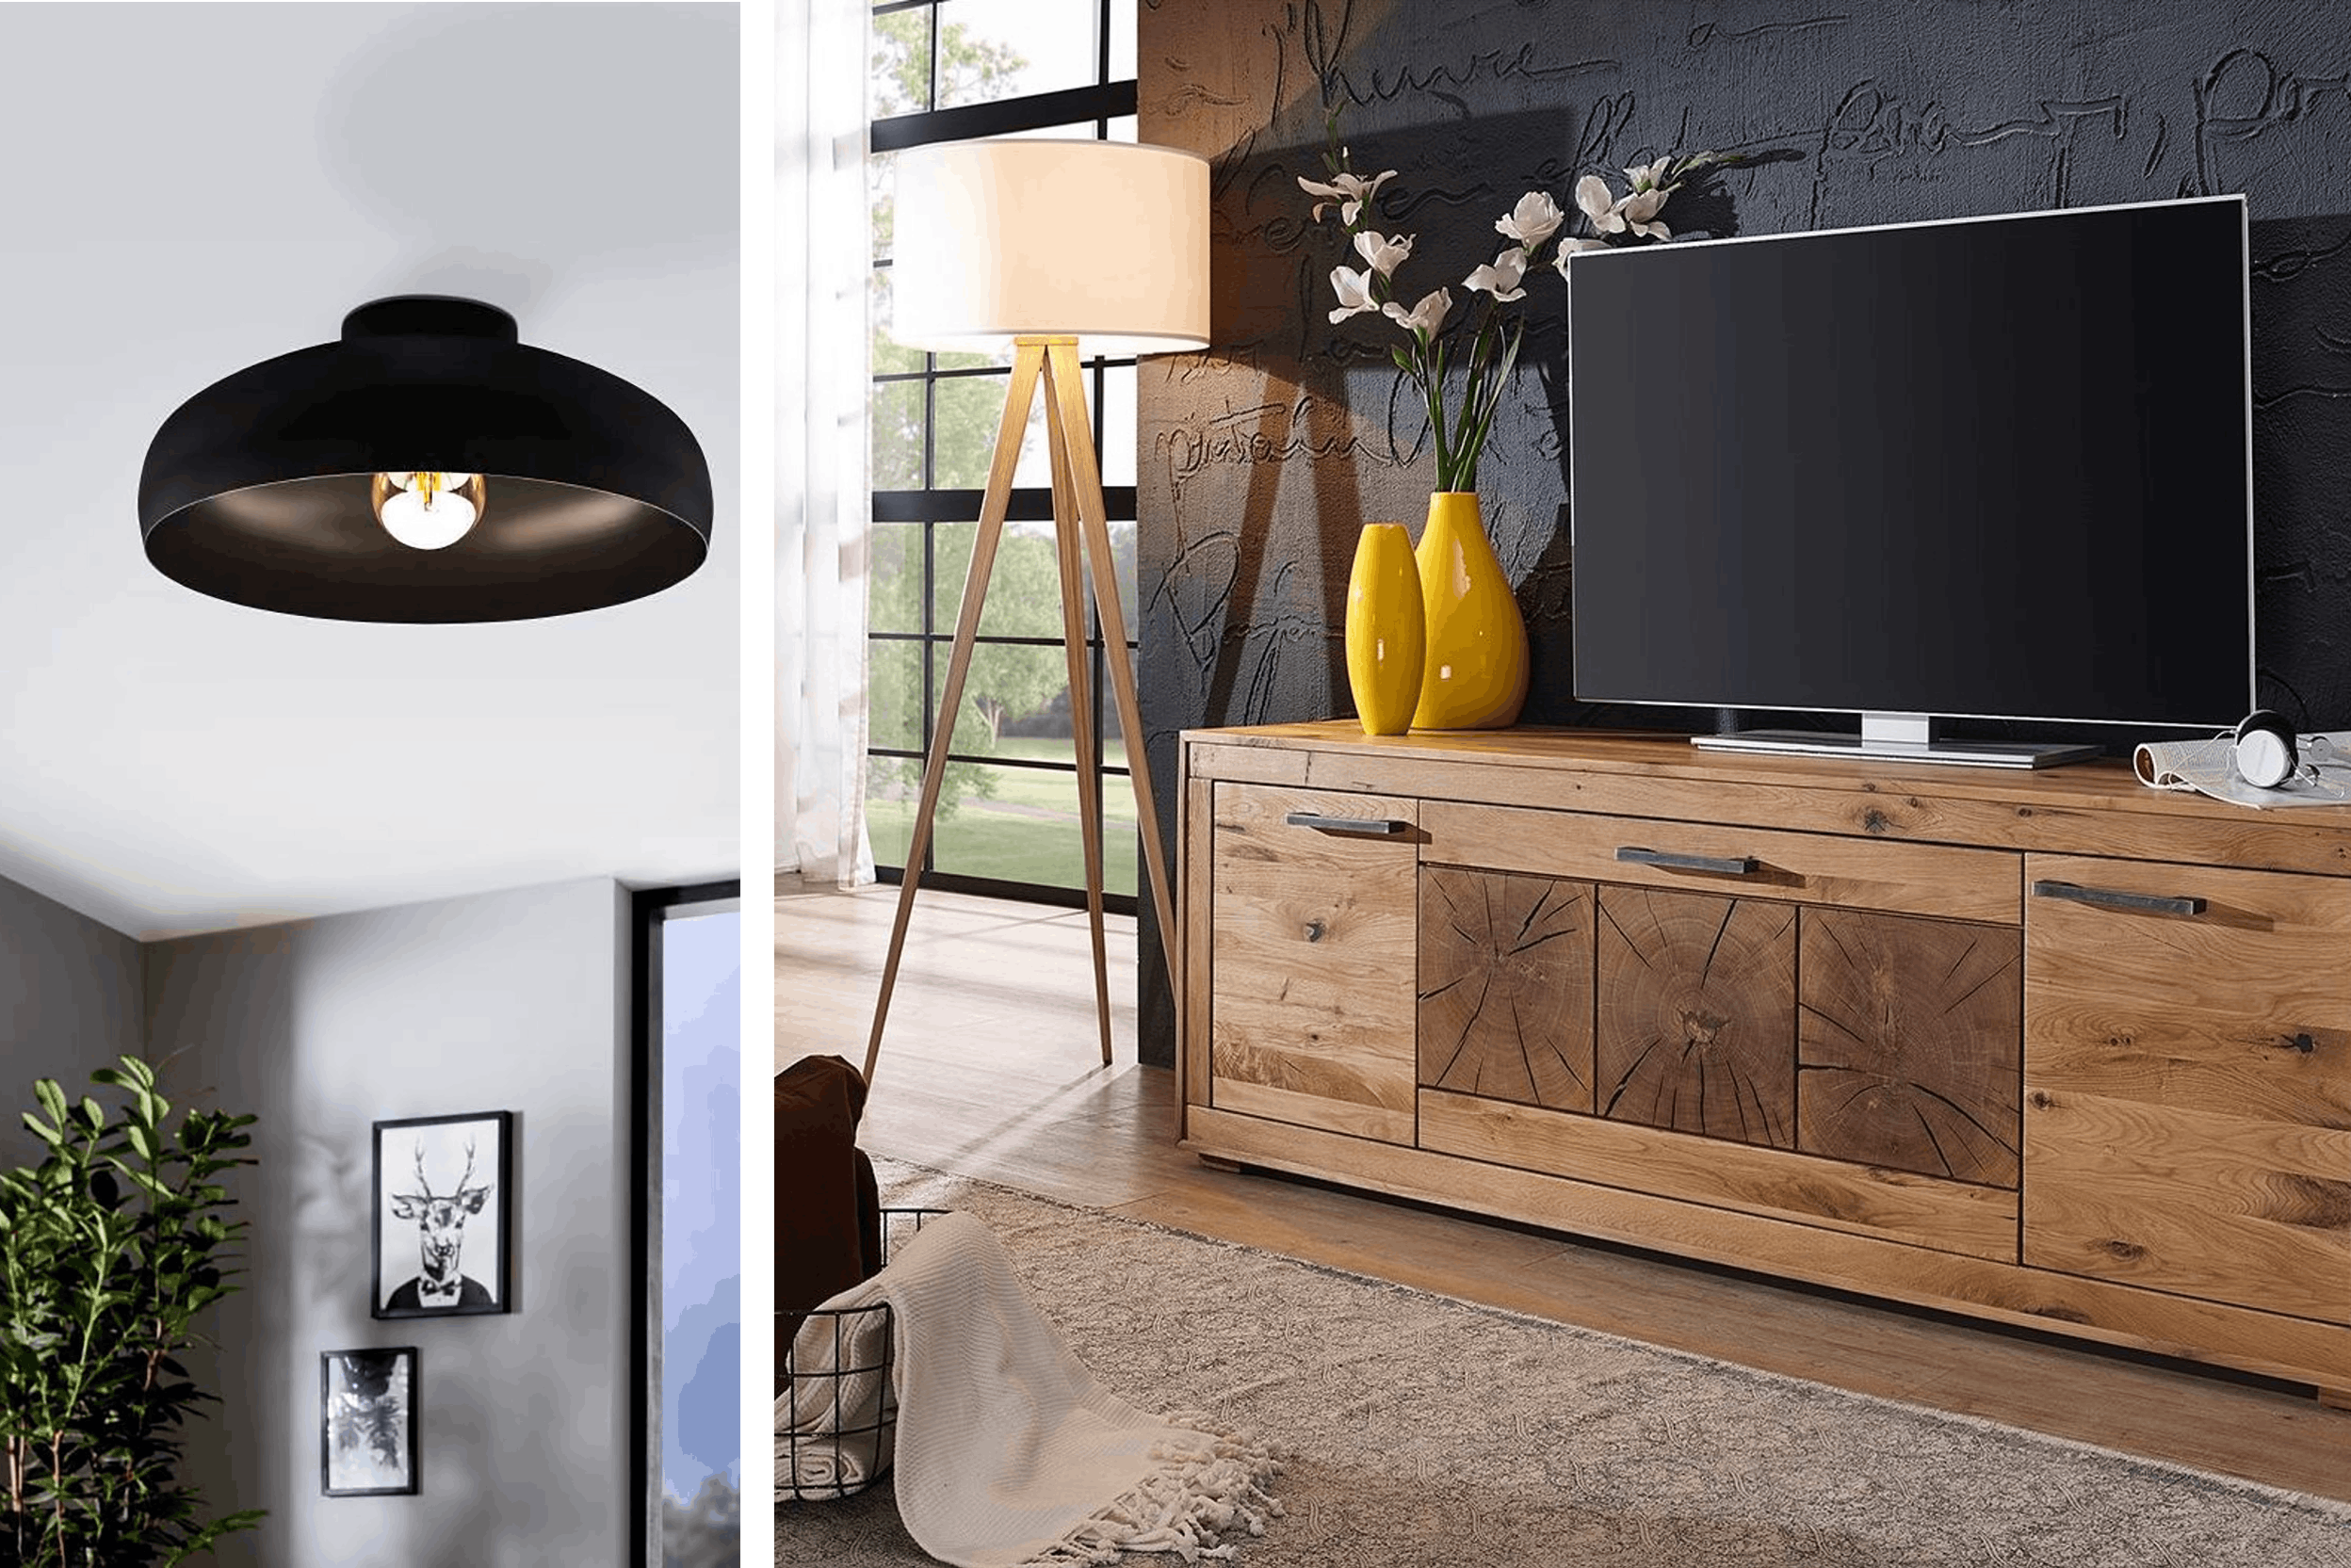 Lampada nera da soffitto, mobile TV con cassetti contenitori e lampada di design nordico